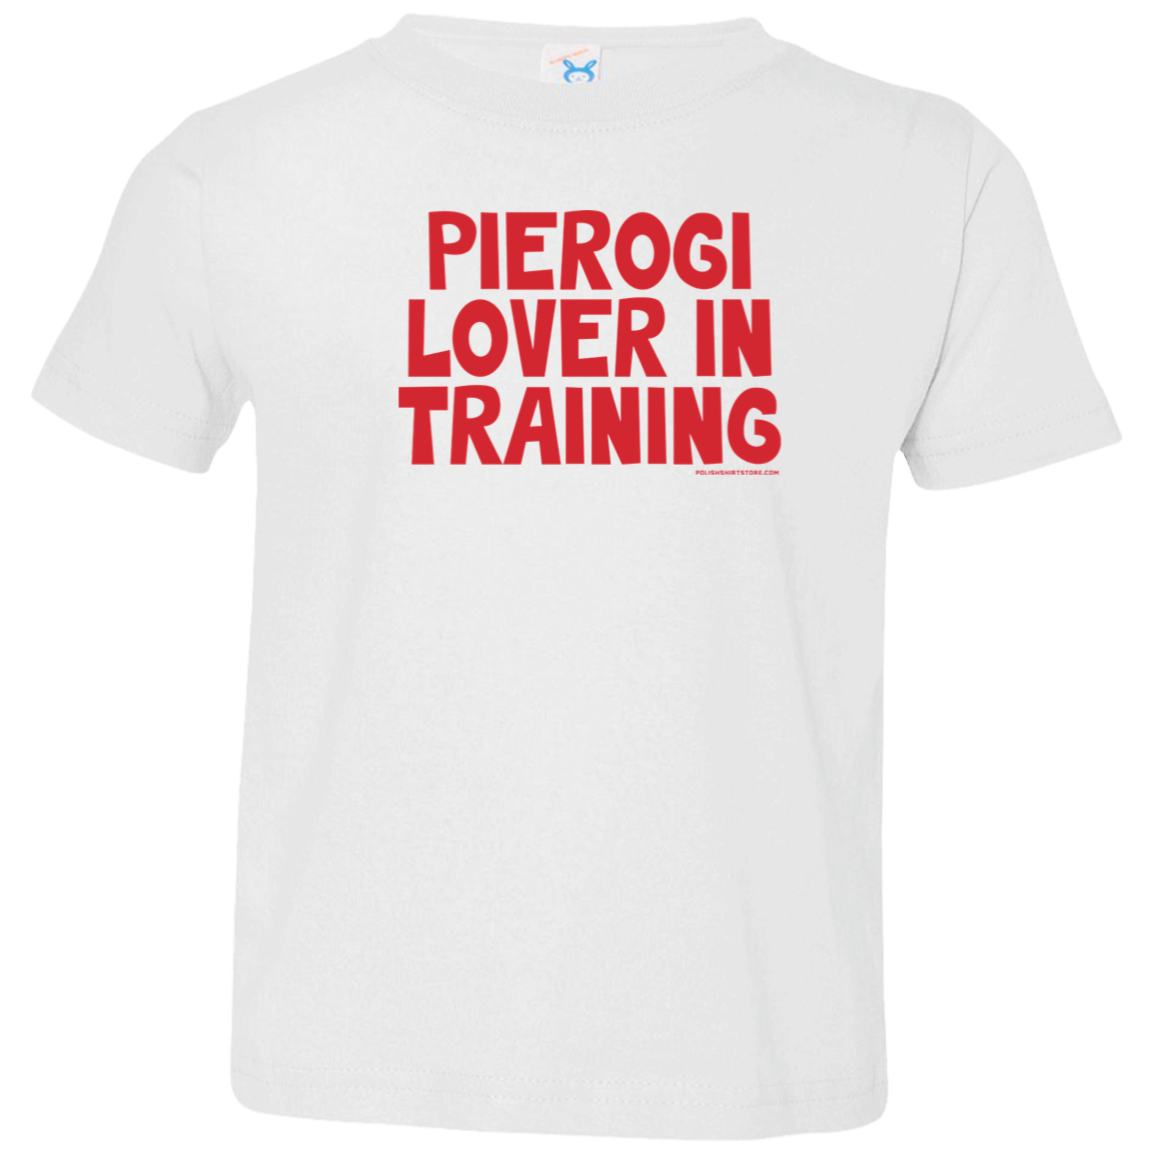 Pierogi Lover In Training Infant & Toddler T-Shirt Apparel CustomCat Toddler T-Shirt White 2T